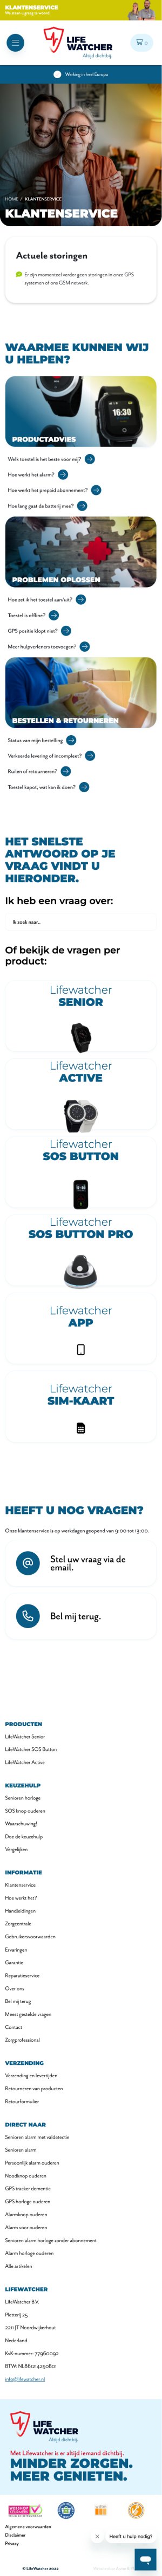 Website LifeWatcher